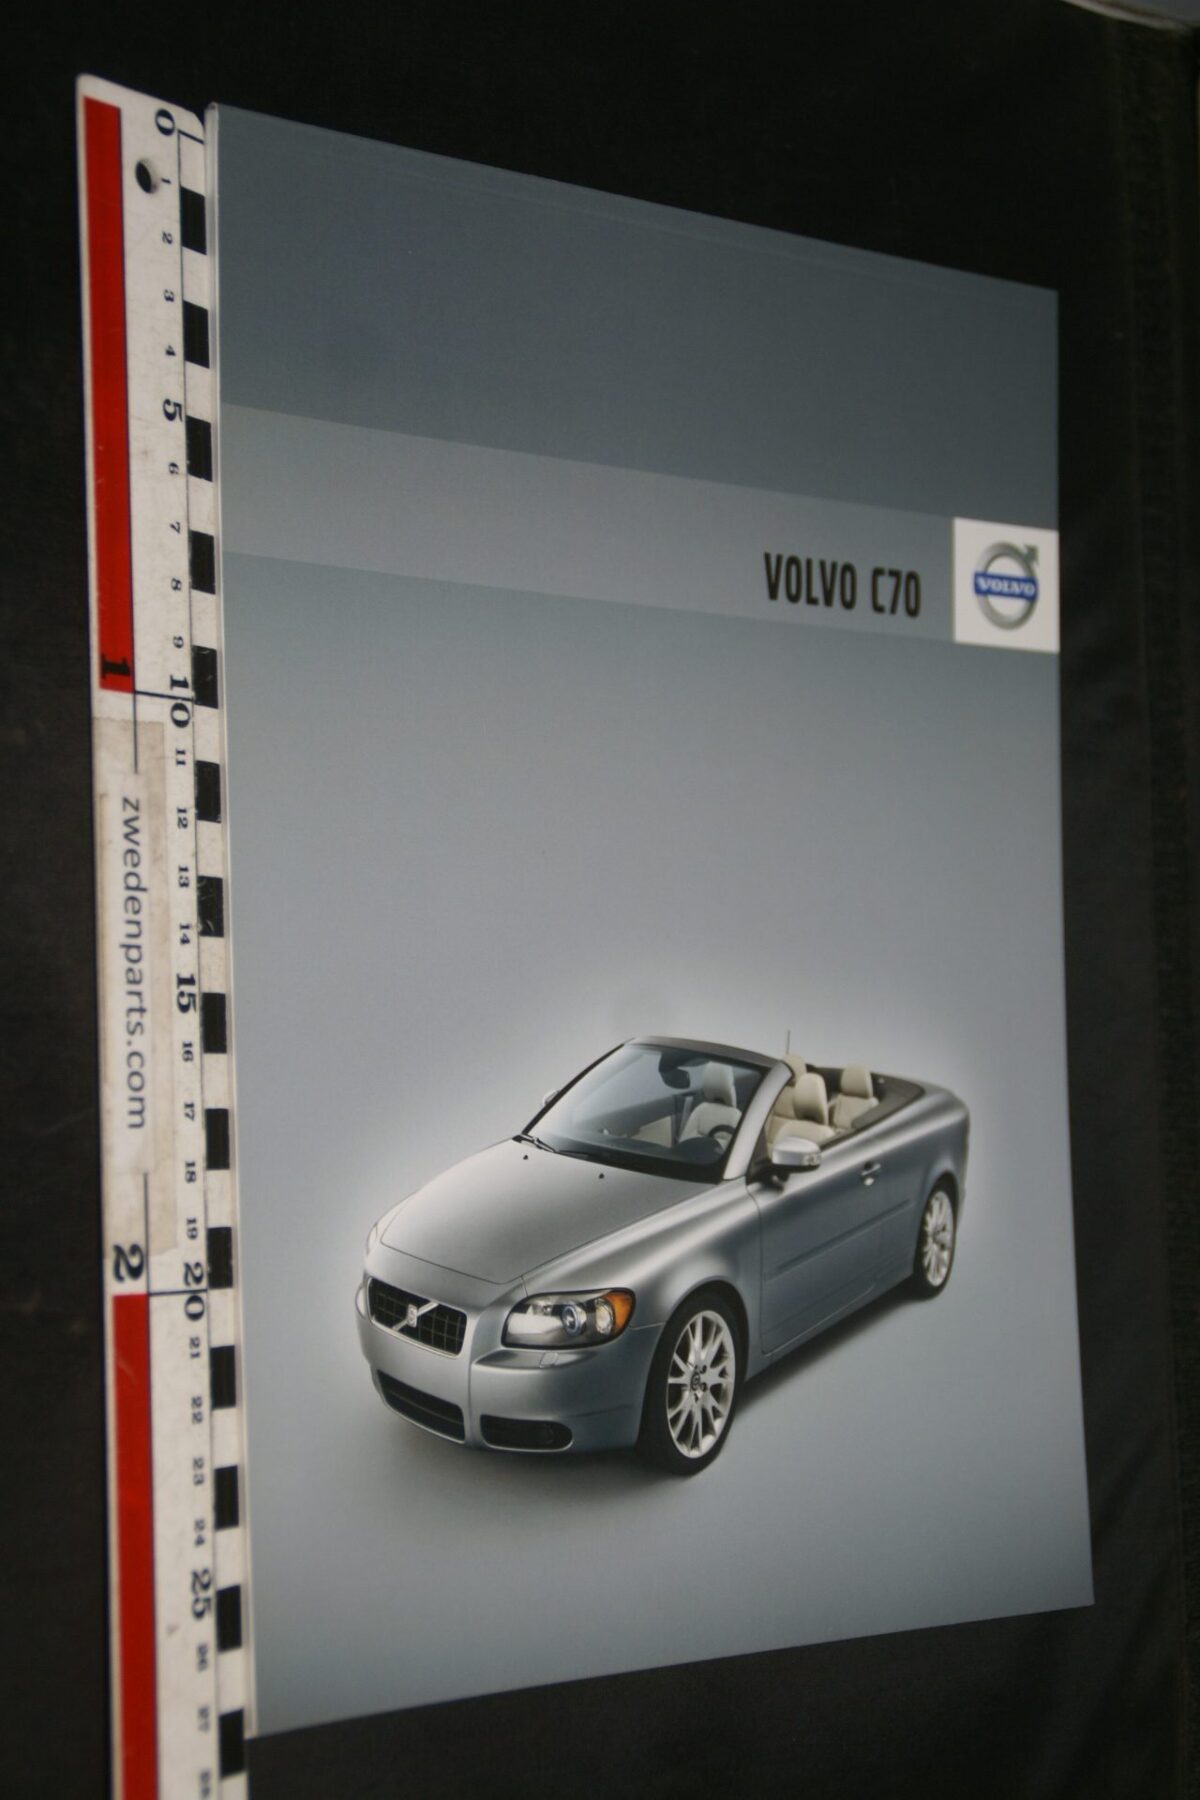 DSC06316 2007 brochure Volvo C70 nr SP-C70-00001-07-08. 05-2007-V1